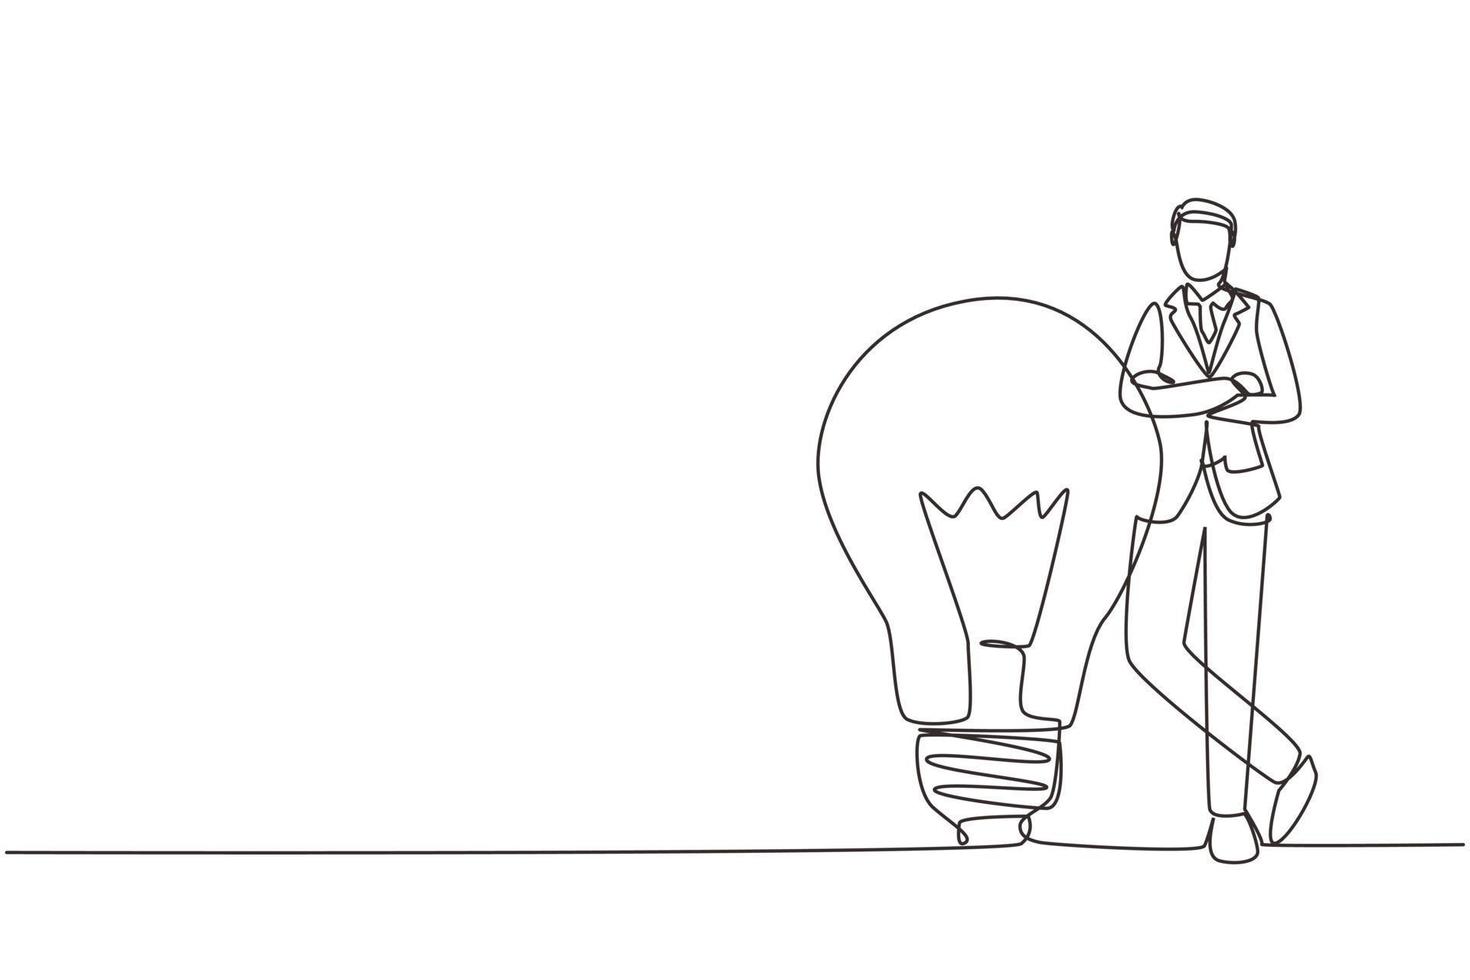 empresário de desenho de linha contínua, apoiando-se na lâmpada gigante, ideia de negócio. pessoas de negócios têm ideias encostadas no símbolo da lâmpada é uma boa ideia. ilustração vetorial de desenho de linha única vetor